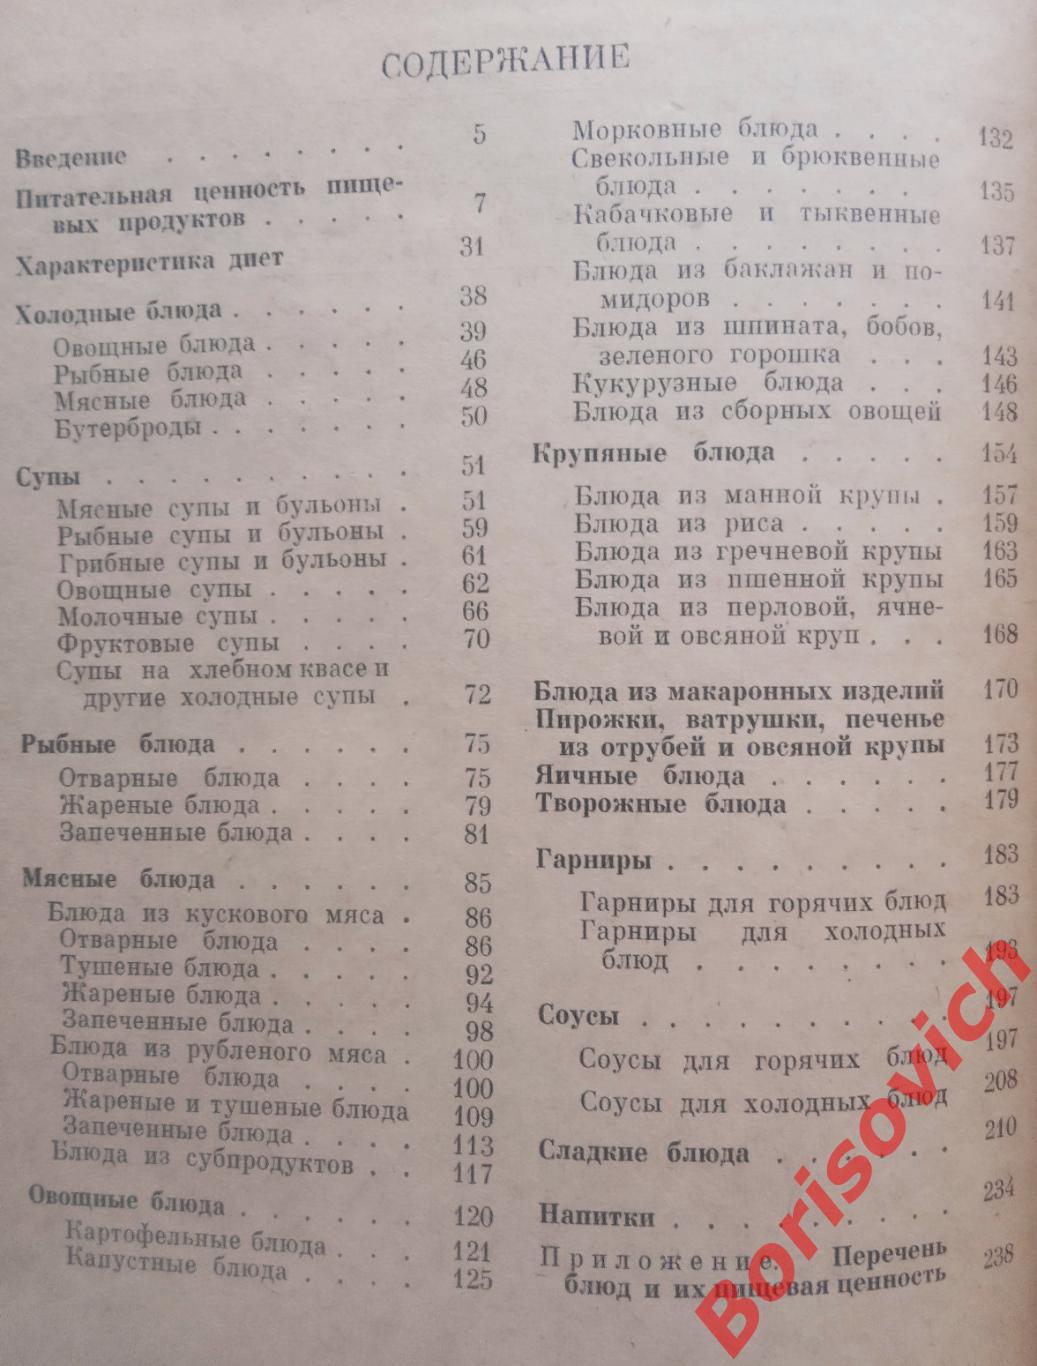 Диетическое питание в столовых Сборник рецептур Москва 1962 г 264 страницы 3